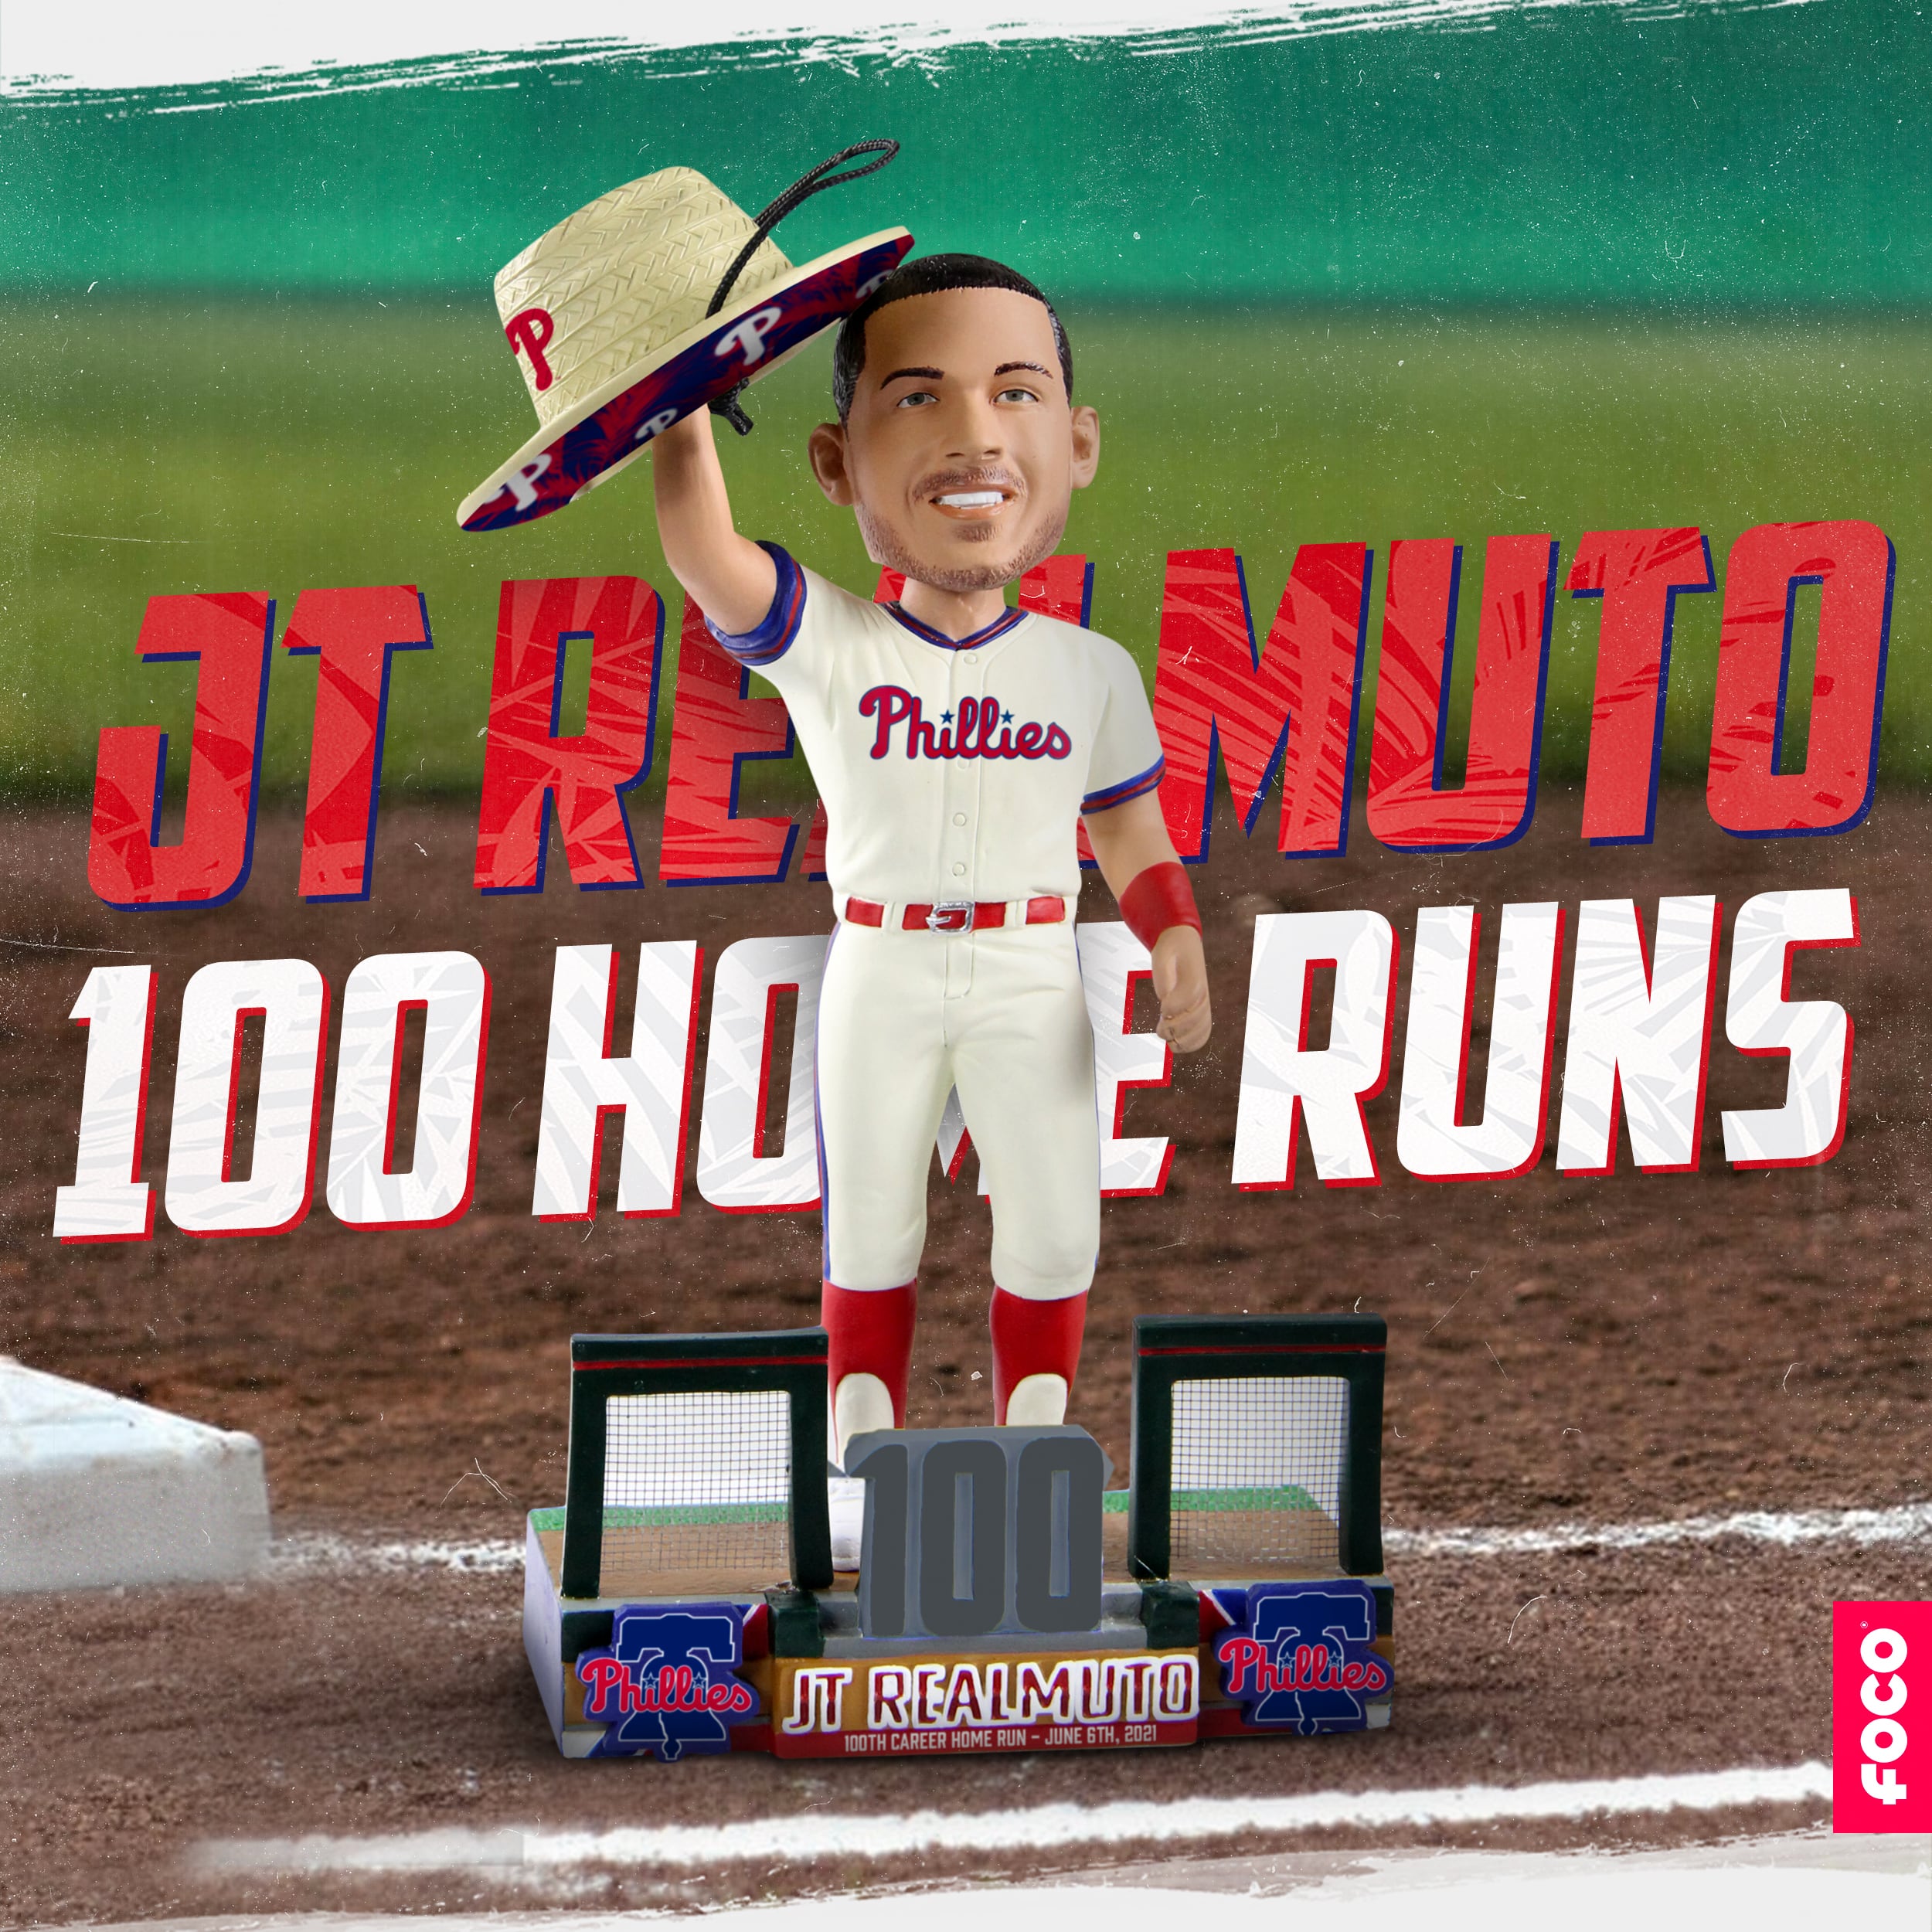 JT Realmuto (Philadelphia Phillies) Hero Series MLB Bobblehead by FOCO